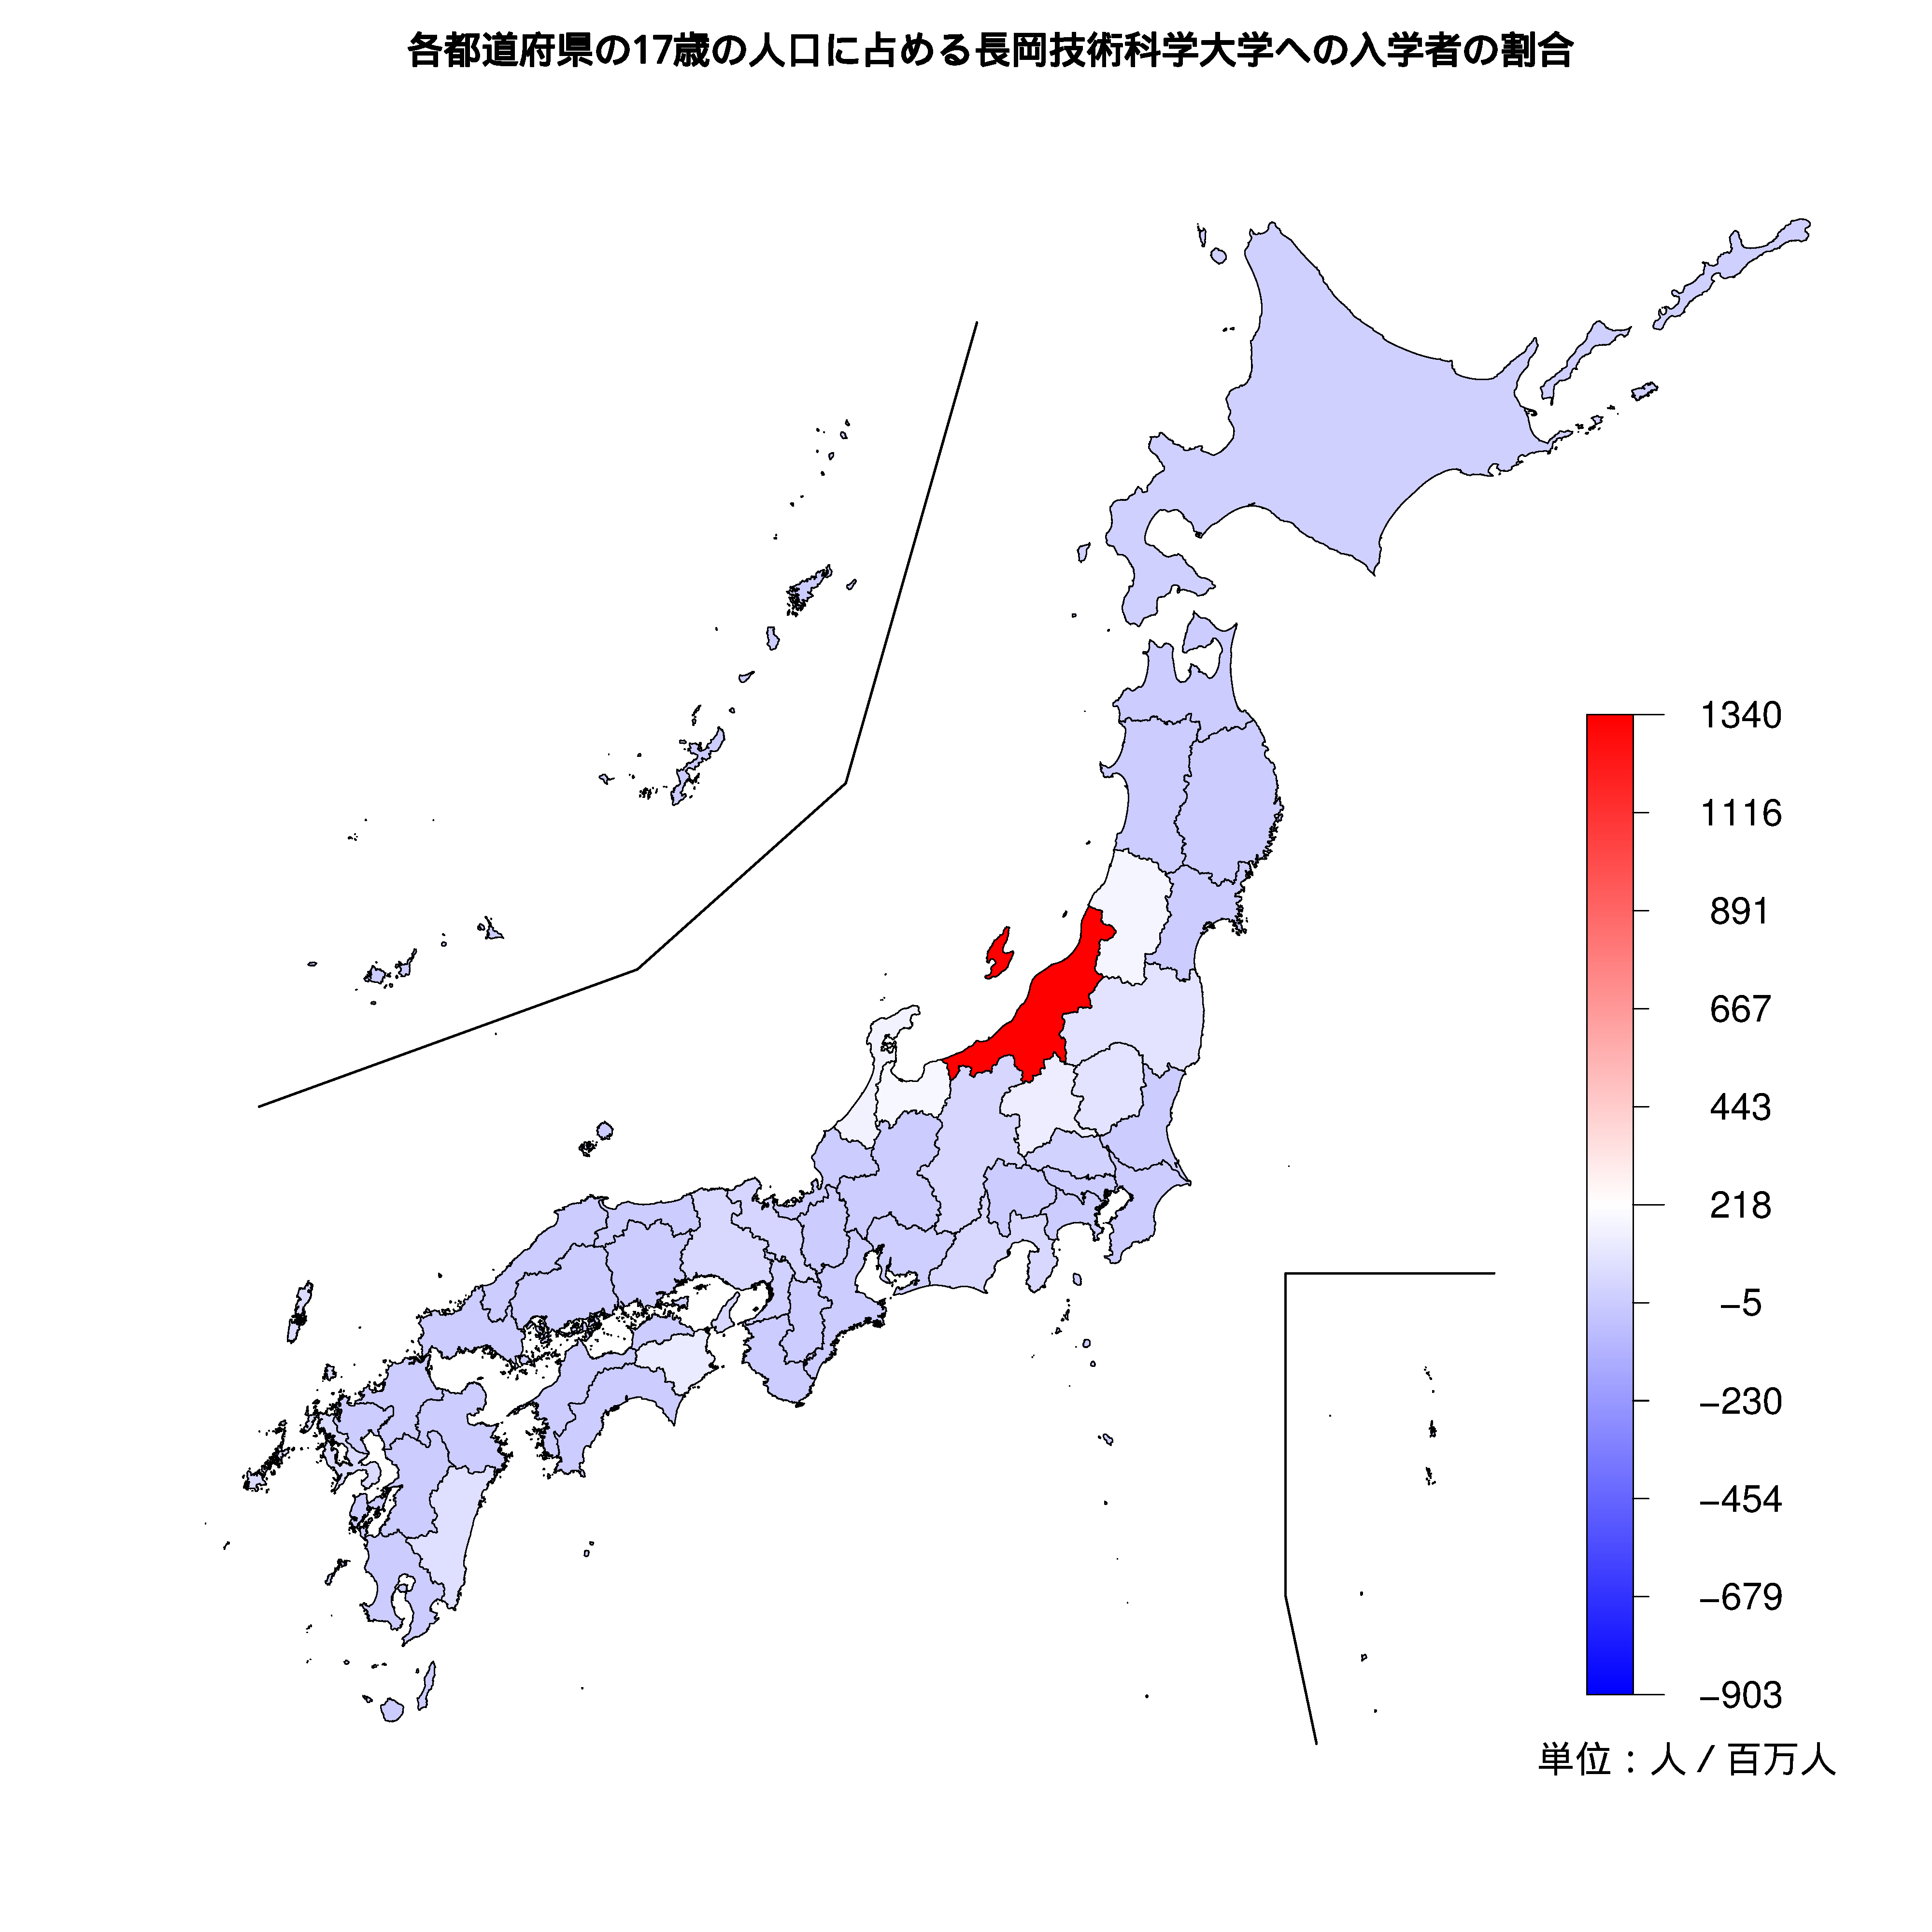 長岡技術科学大学への入学者が多い都道府県の色分け地図